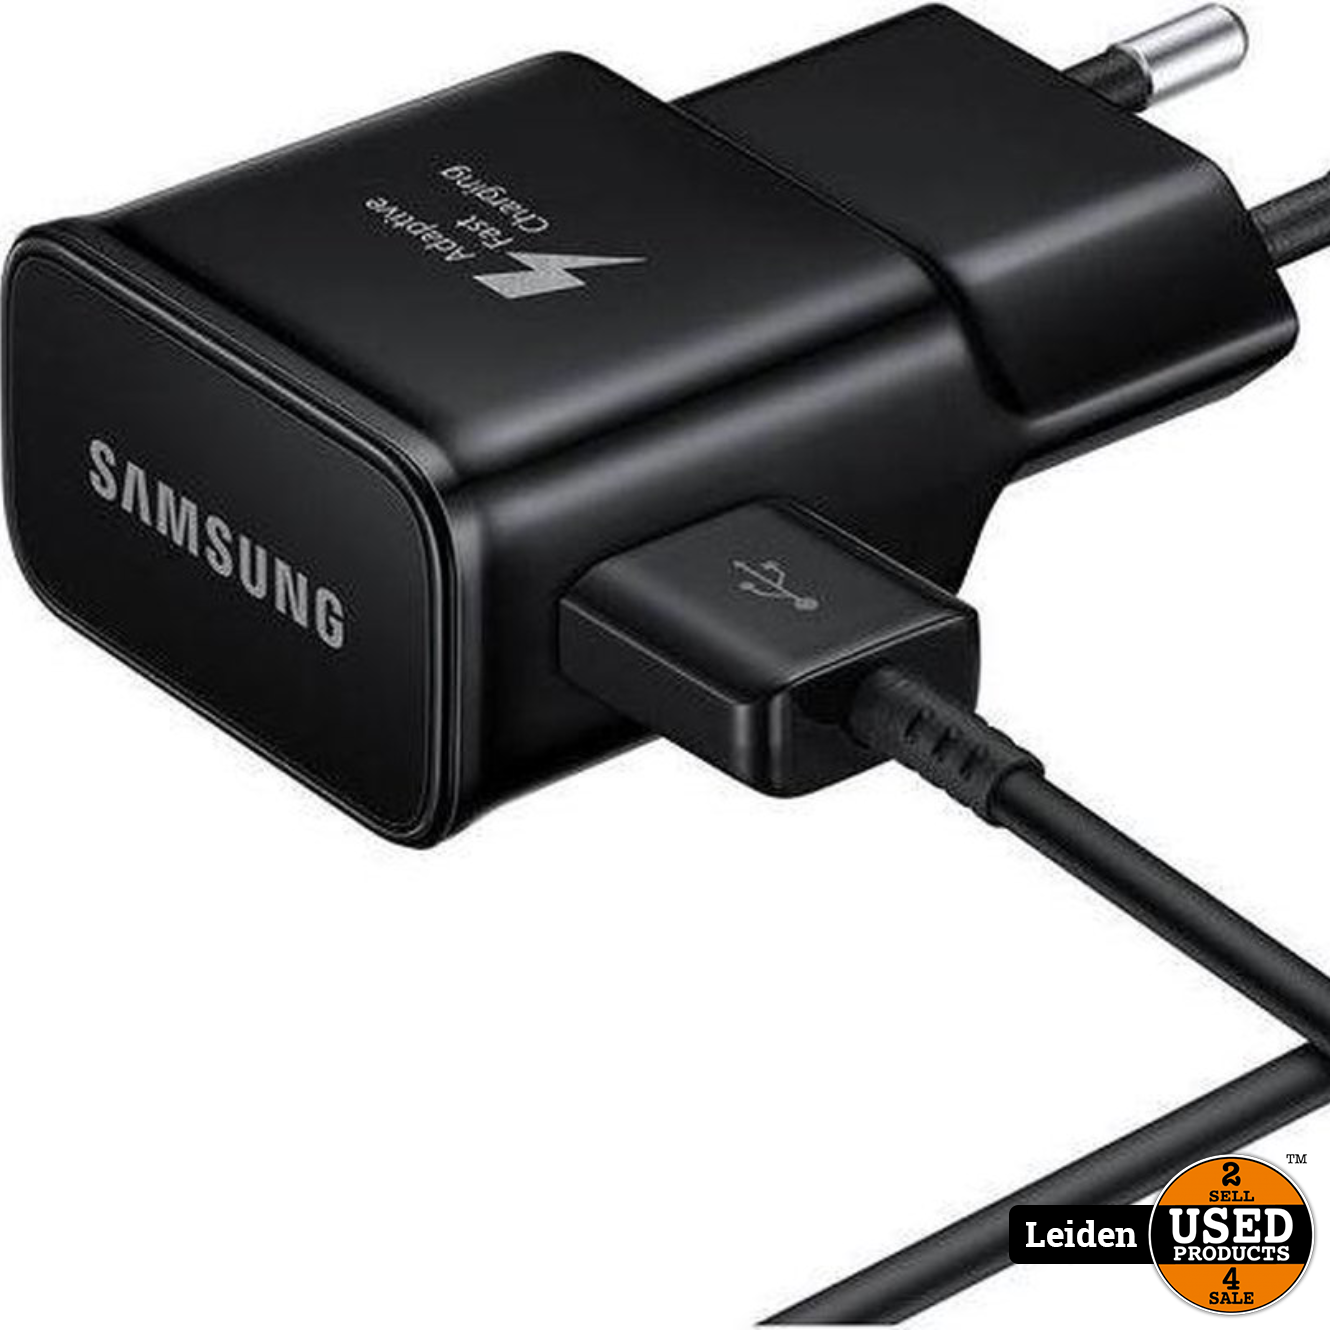 Slecht Afstoting Raak verstrikt Samsung Travel Adapter 2A USB-C naar USB - Zwart - Used Products Leiden